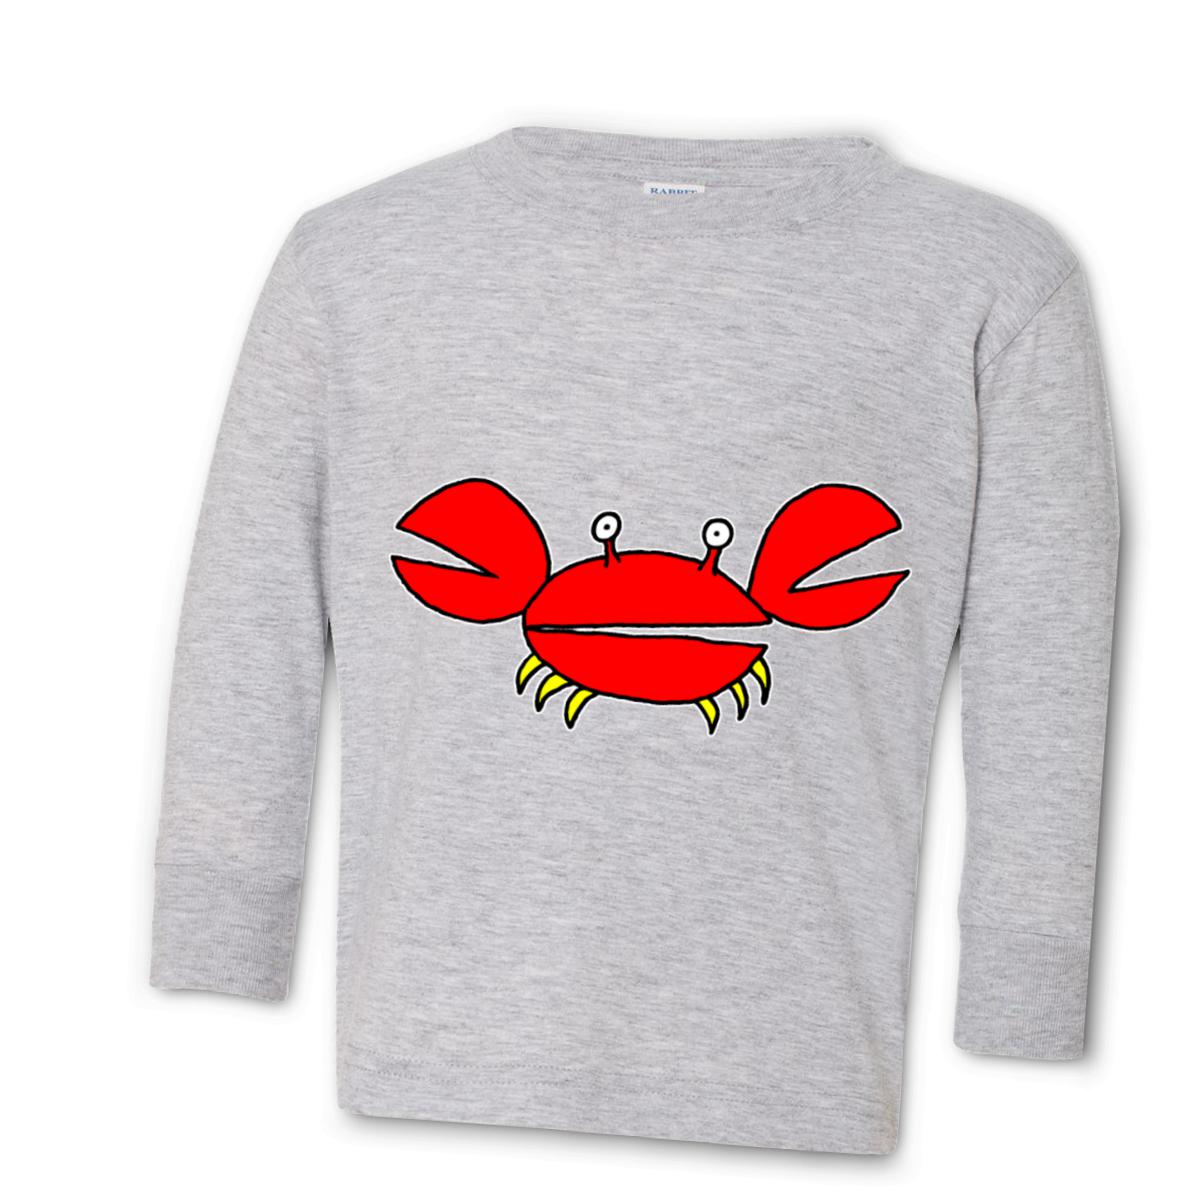 Crab Kid's Long Sleeve Tee Small heather